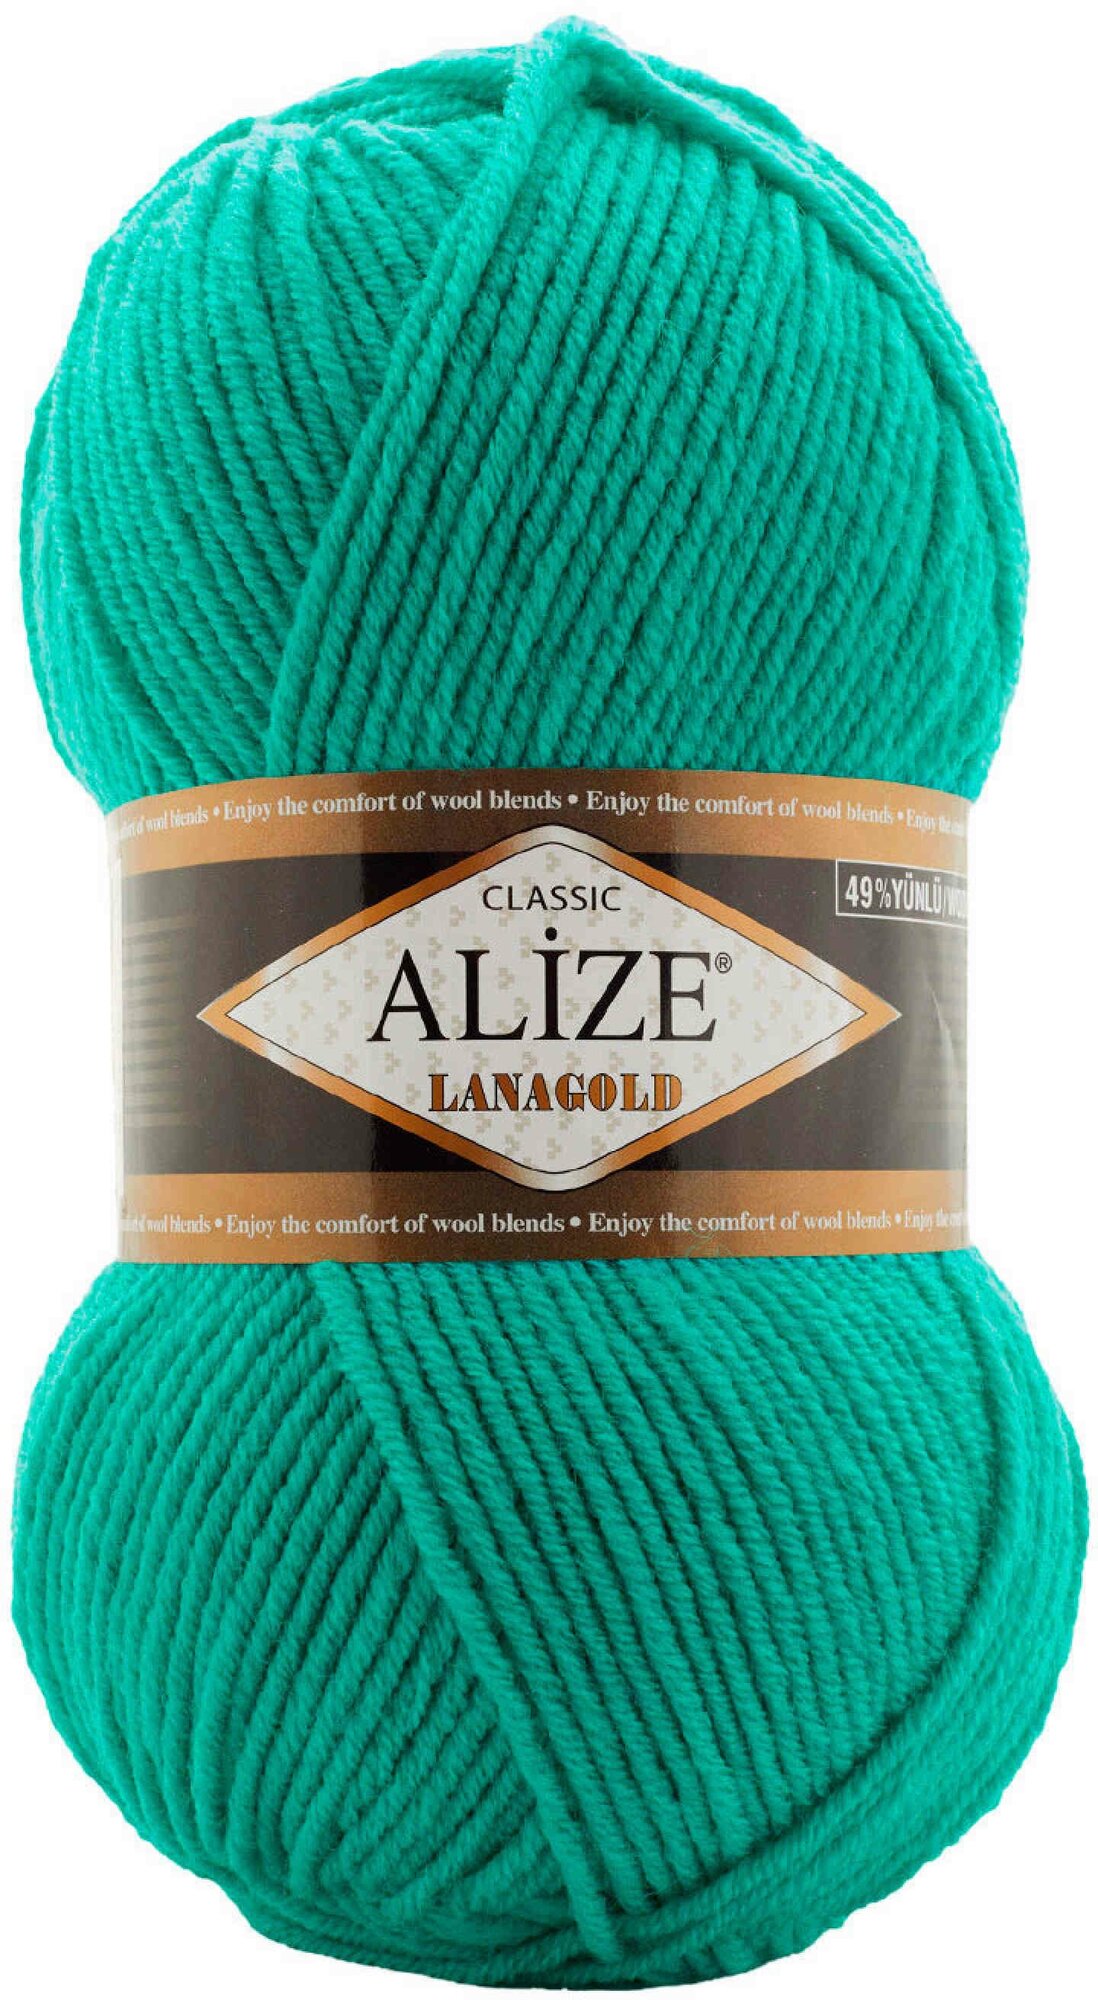 Пряжа Alize Lanagold бирюзово-зеленый (477), 51%акрил/49%шерсть, 240м, 100г, 5шт